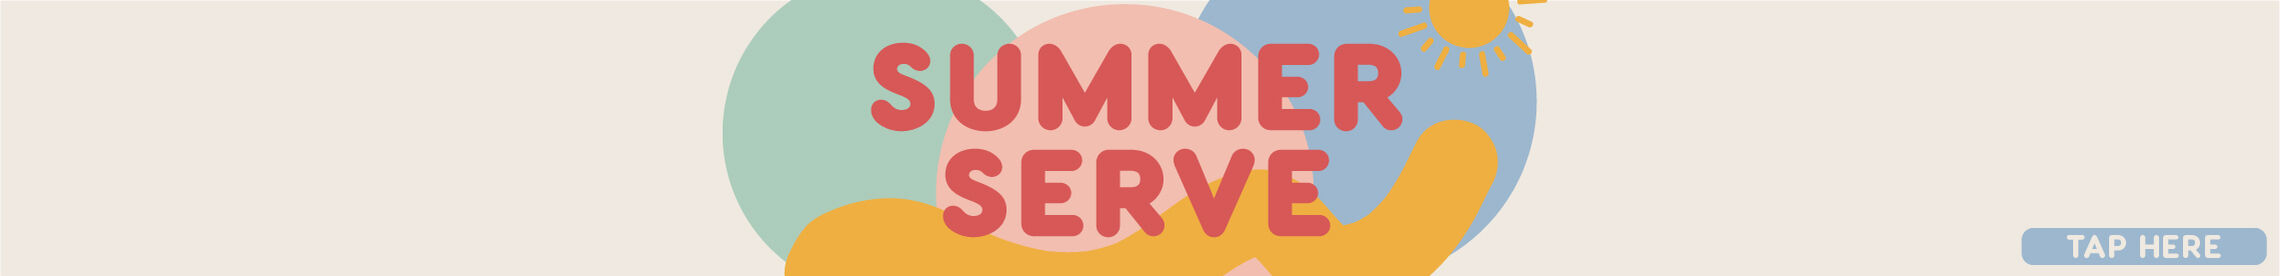 Summer Serve Web Banner 2280x276